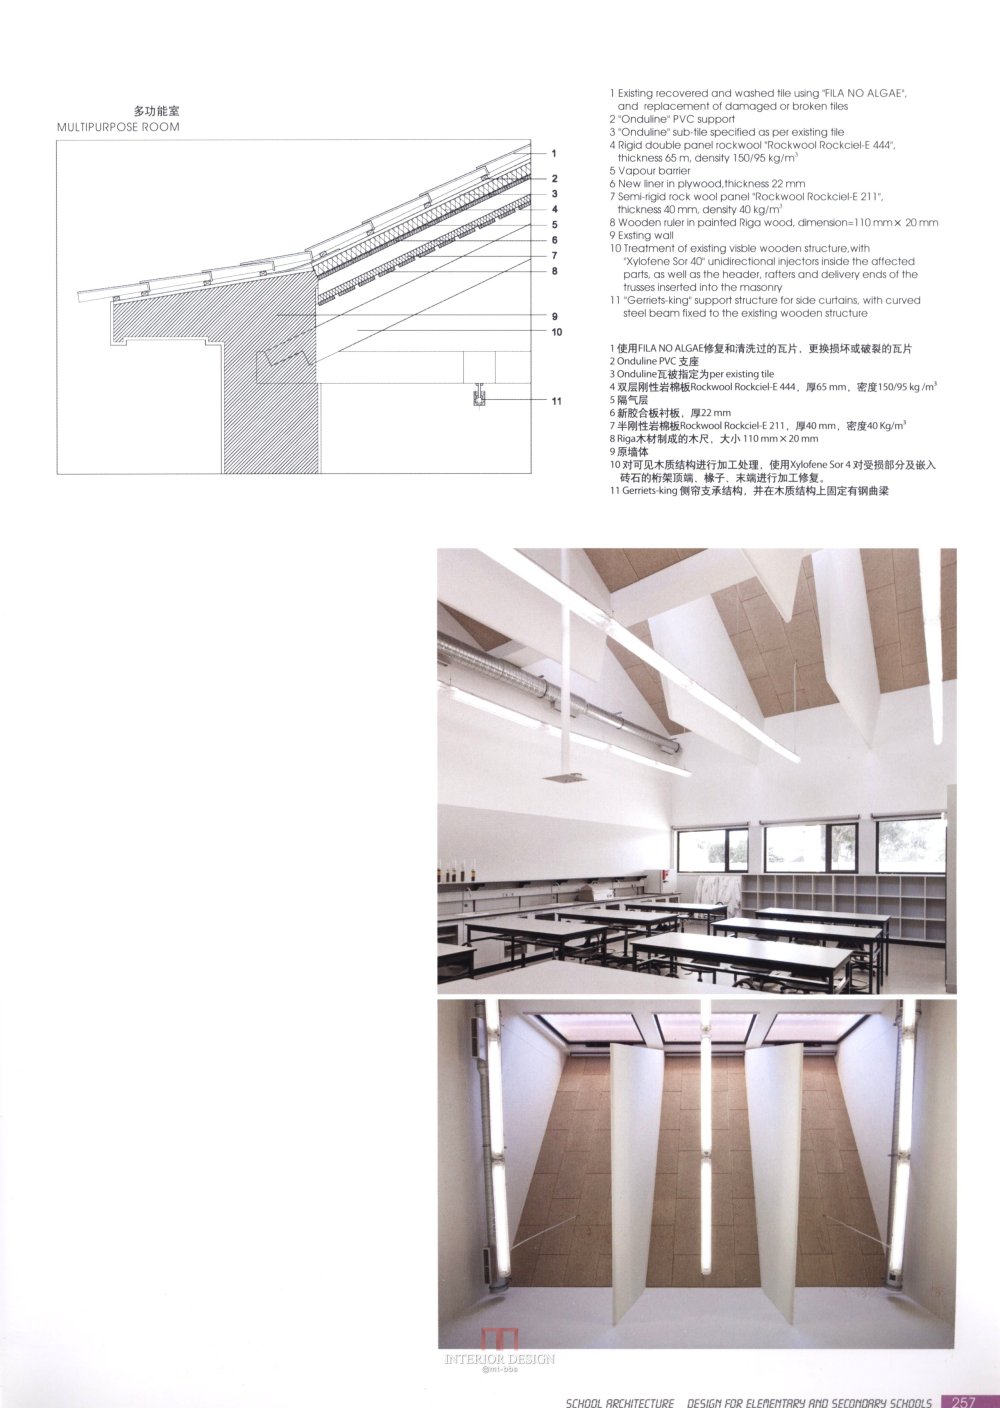 【筑意空间】成长空间 世界当代中小学建筑设计（部分收..._筑意空间 (251).jpg